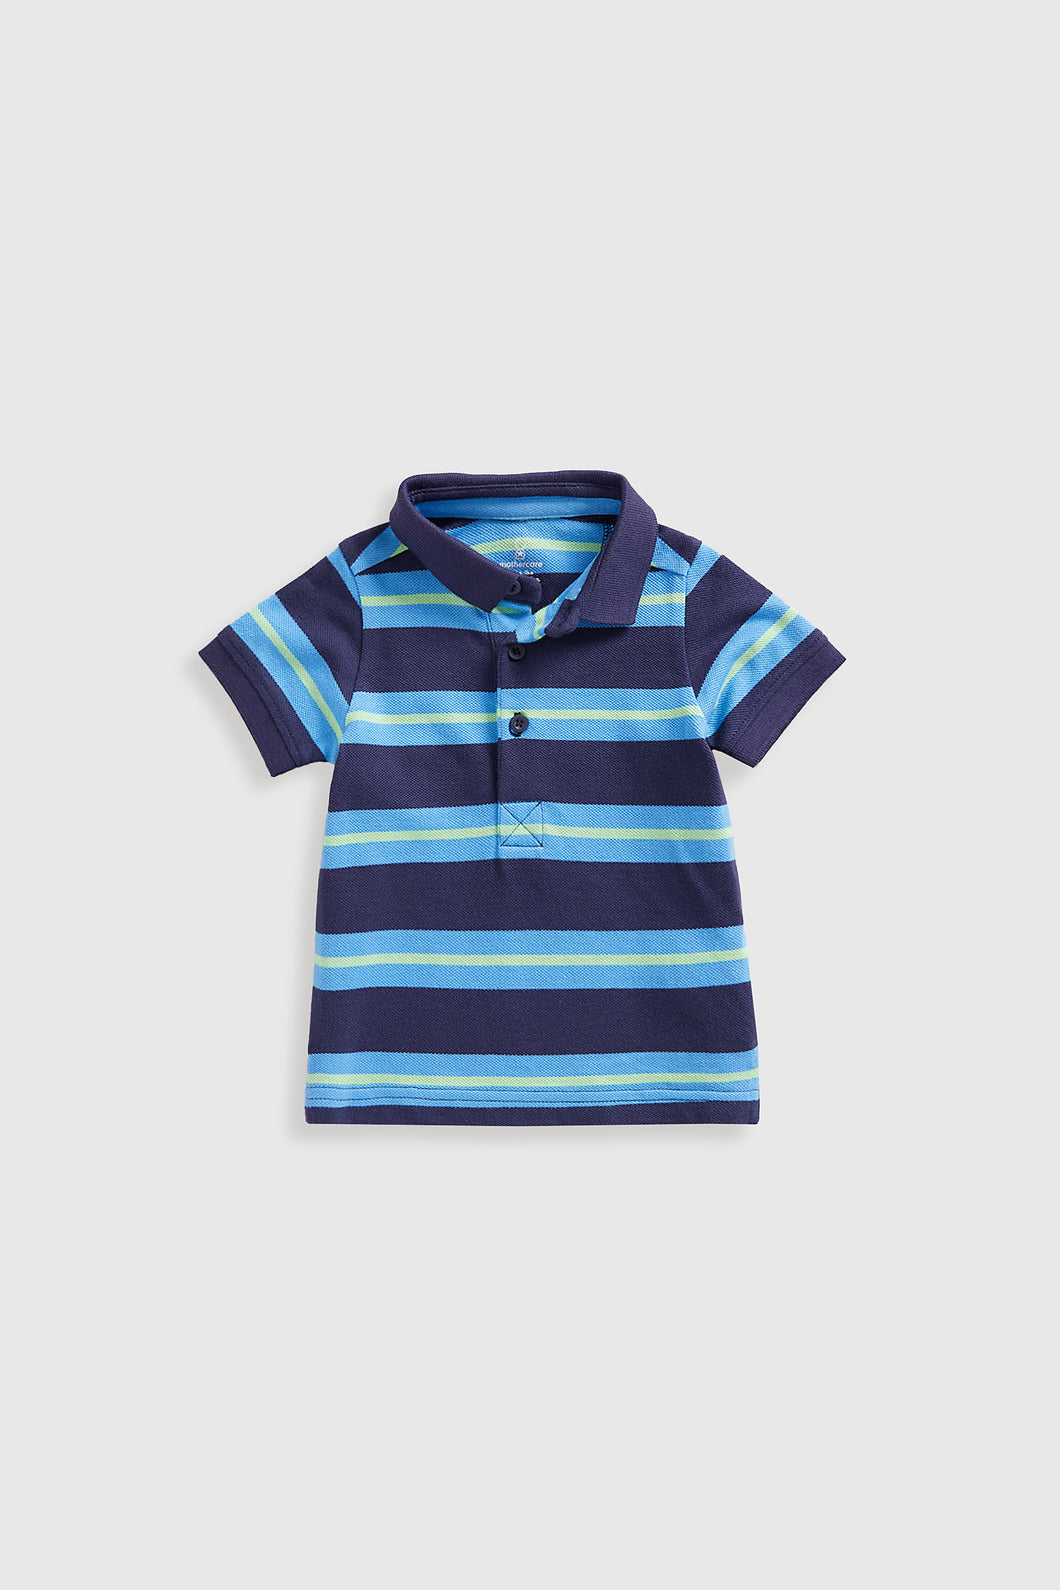 Mothercare Striped Polo Shirt